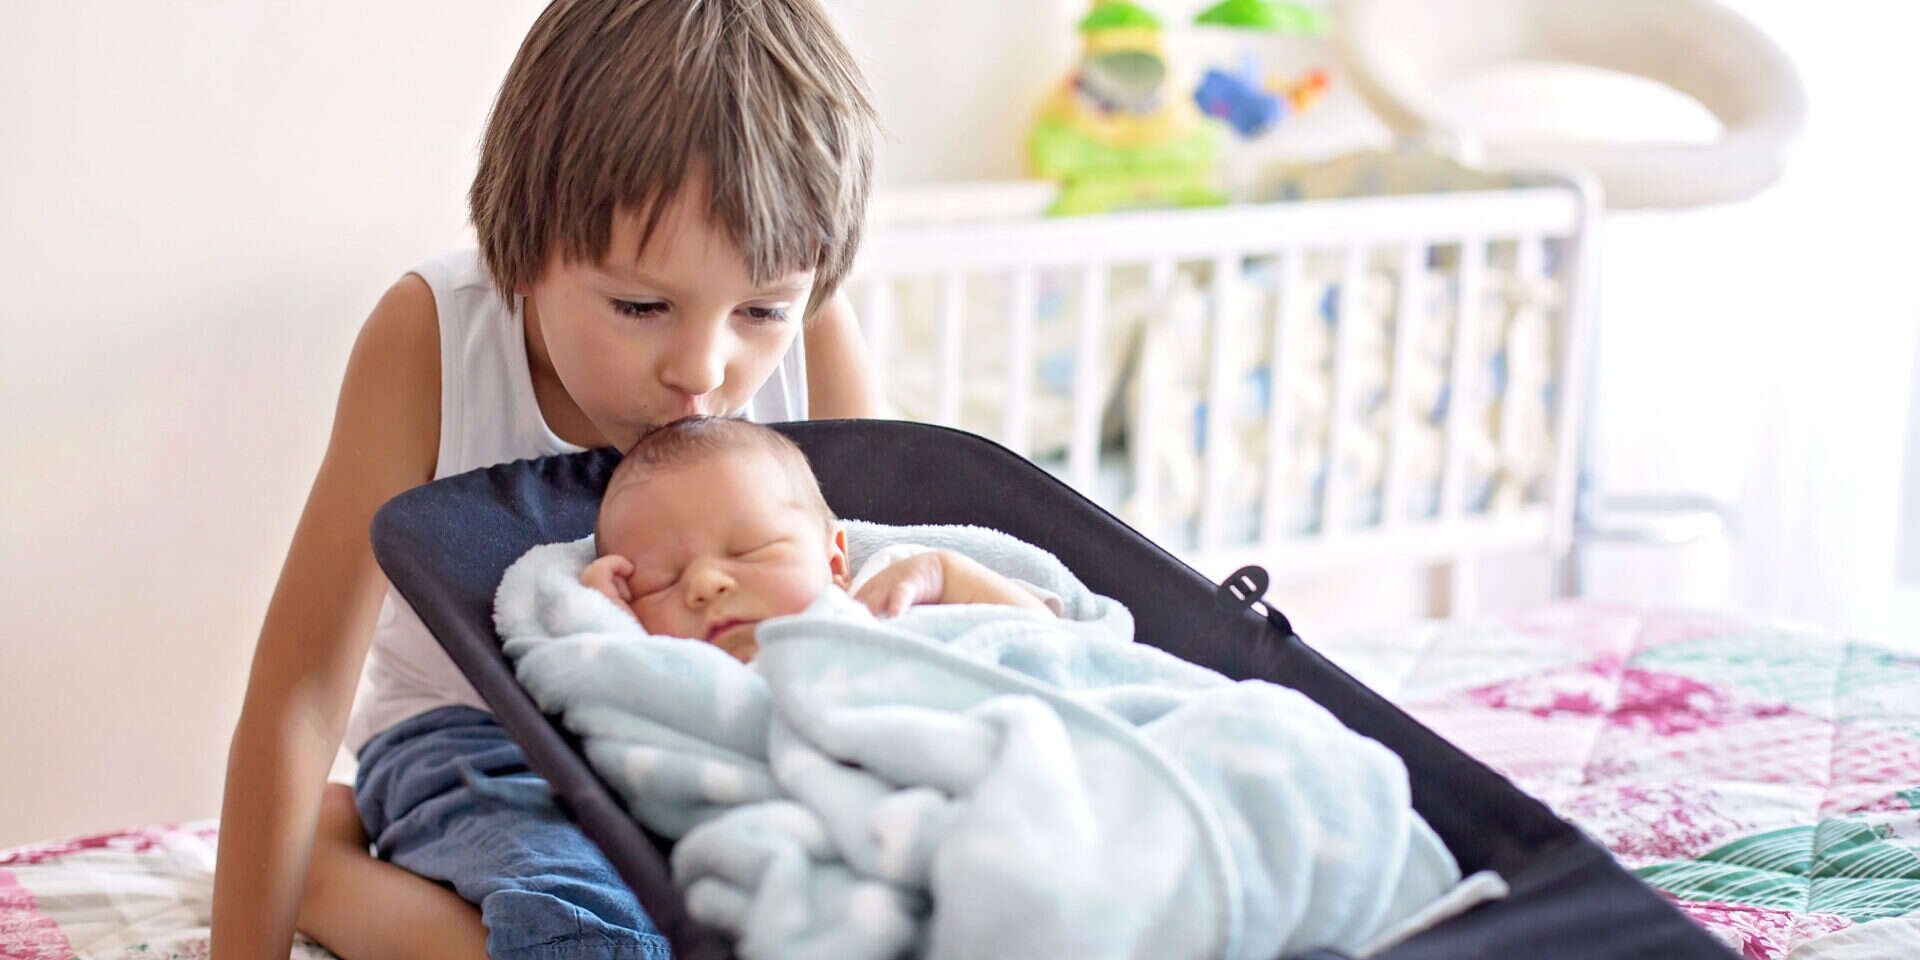 קחו נשימה עמוקה: כך תעזרו לילדיכם לקבל את התינוק החדש במשפחה